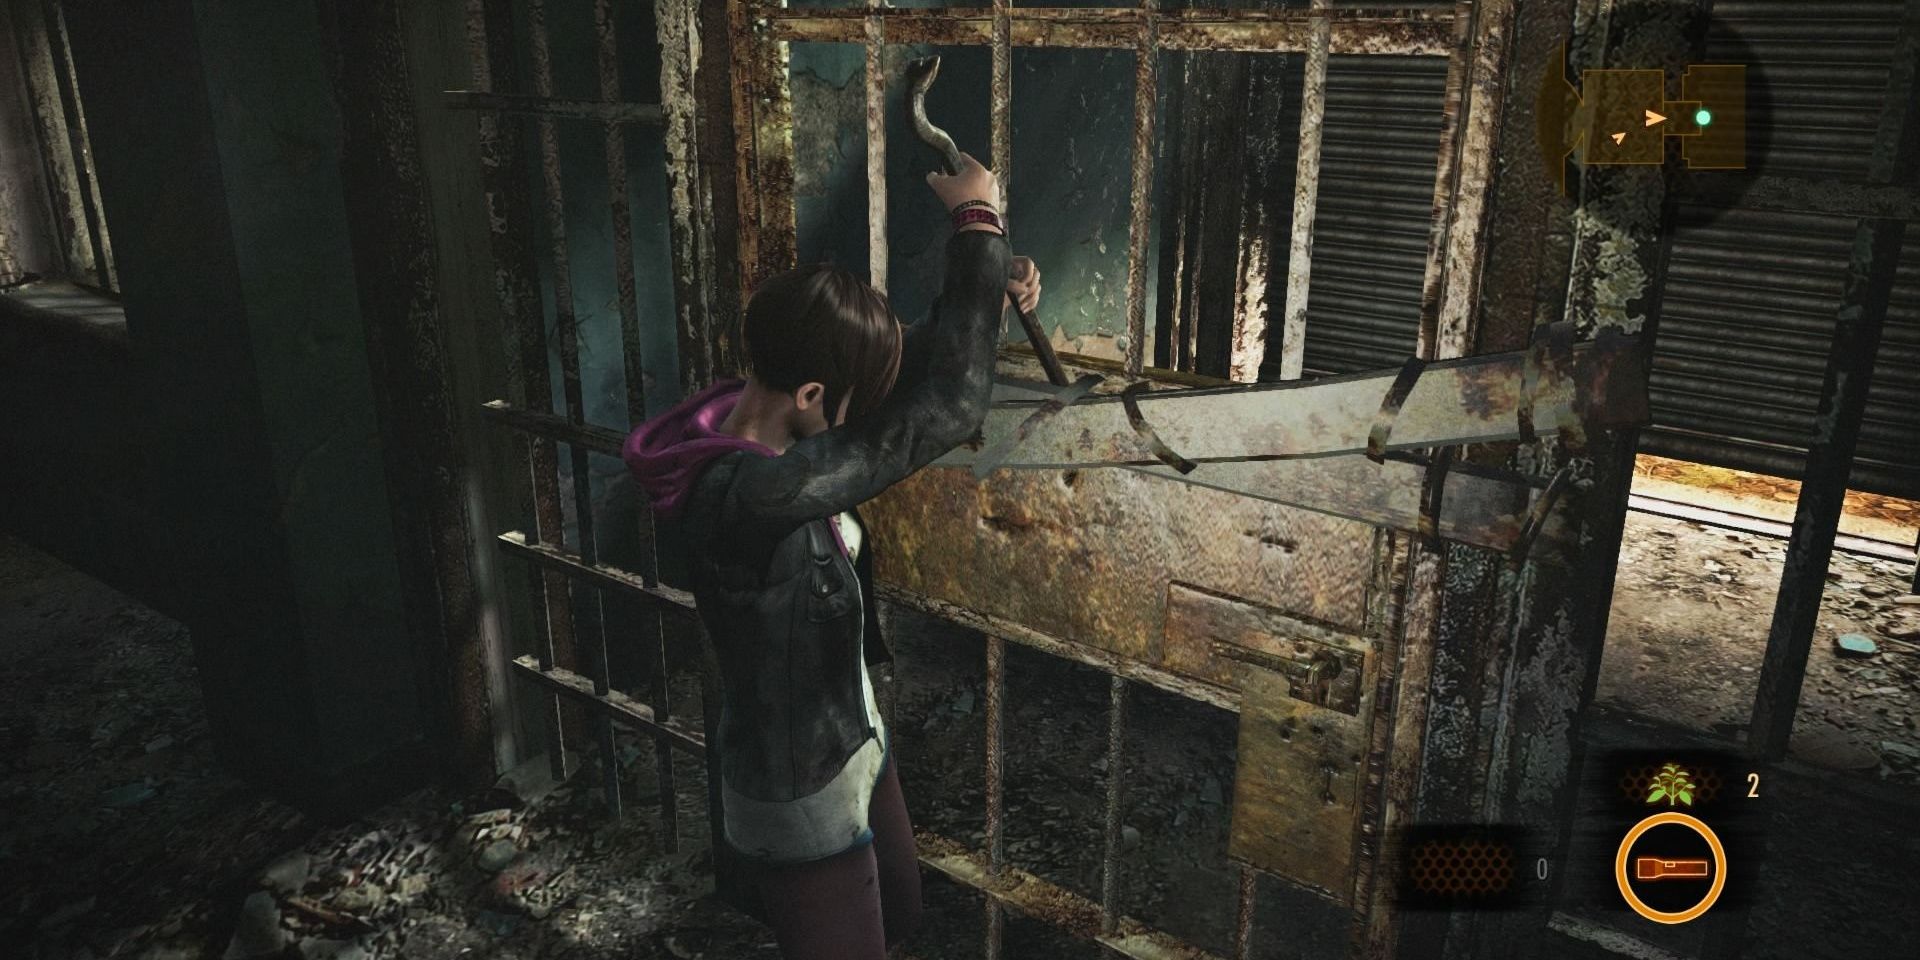 The Crowbar in Resident Evil Revelations 2